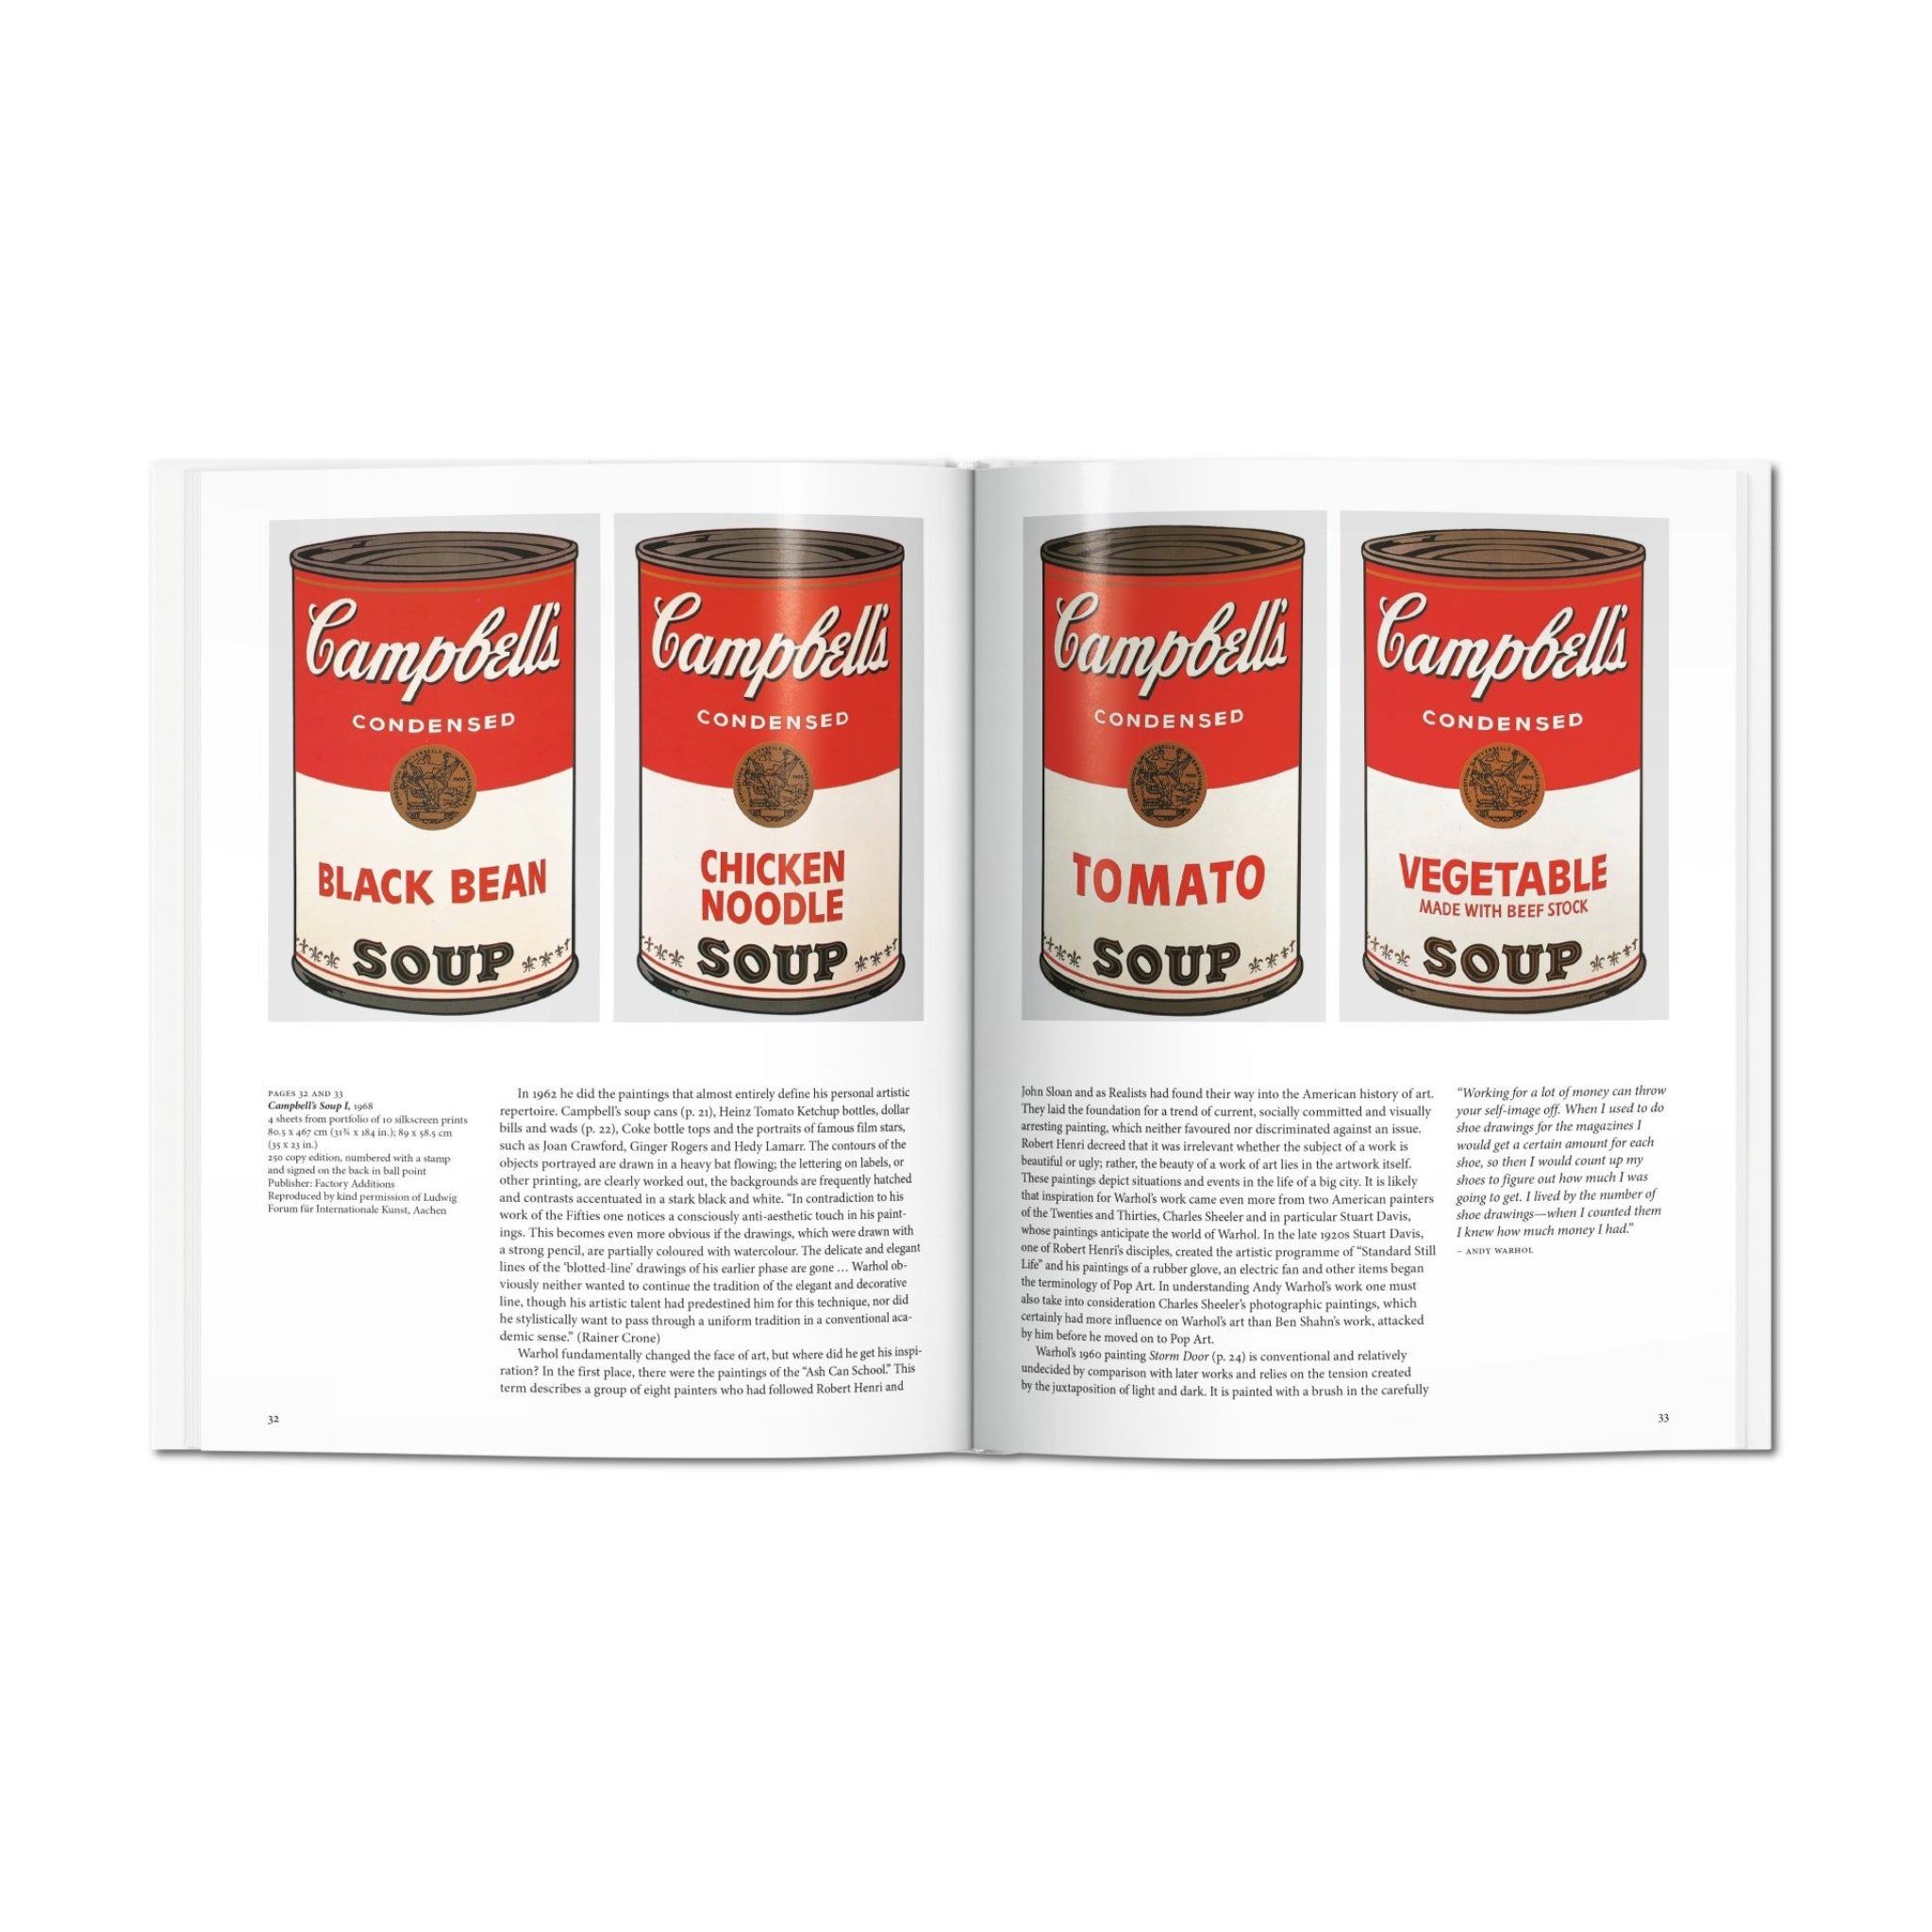 Taschen Andy Warhol (Hardcover) - August Shop